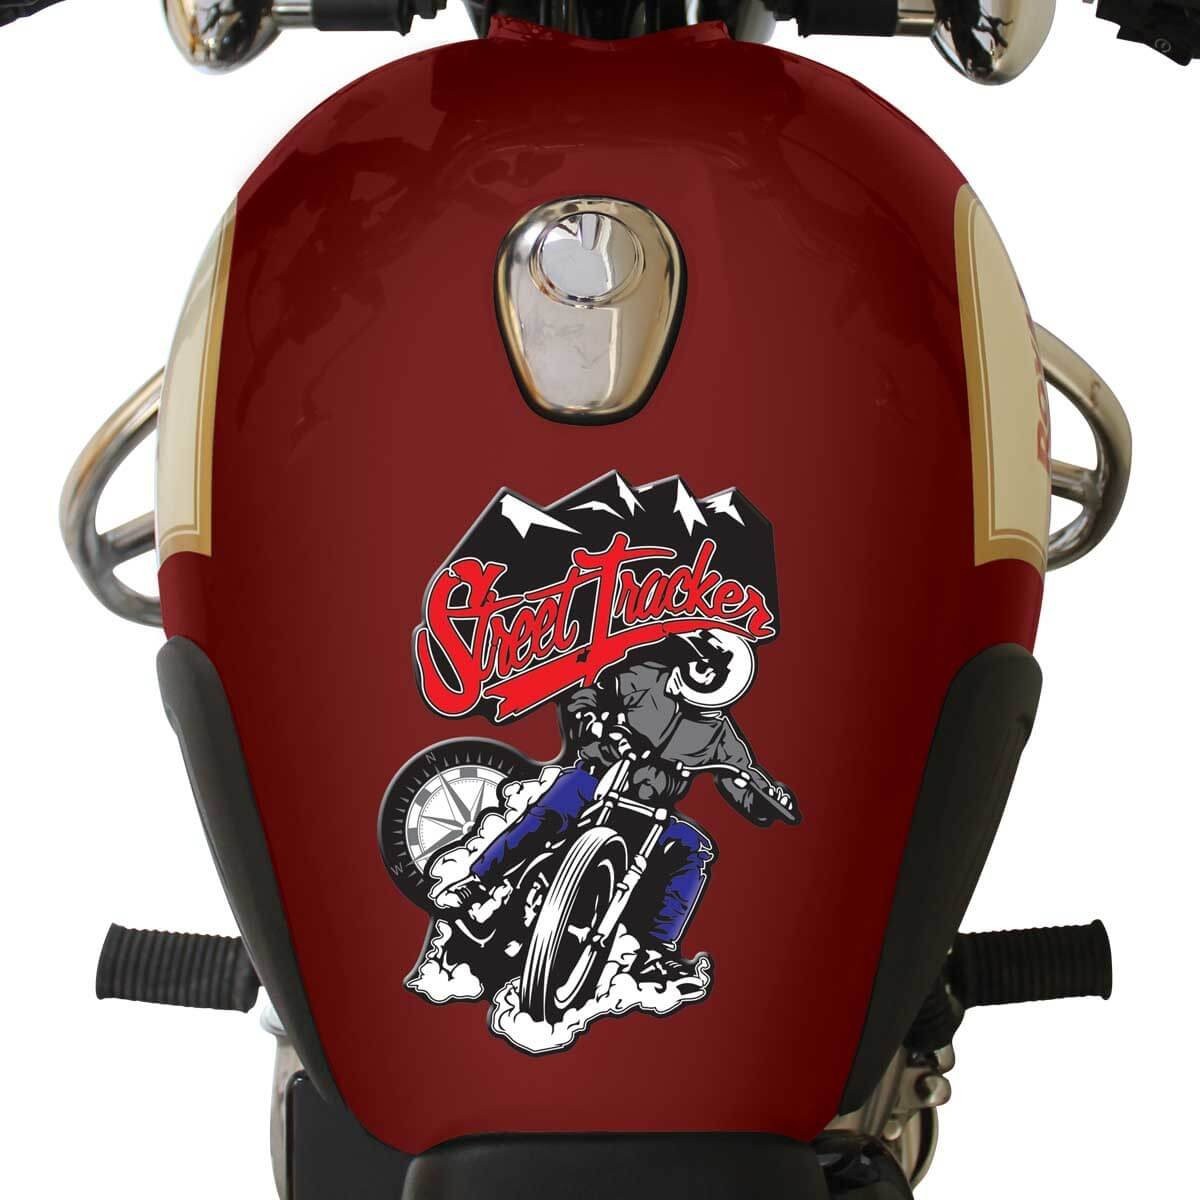 VP1 Motor Bike Sticker, Emblem Petrol, Tank Pad Sticker Vinyl Styling Accessories